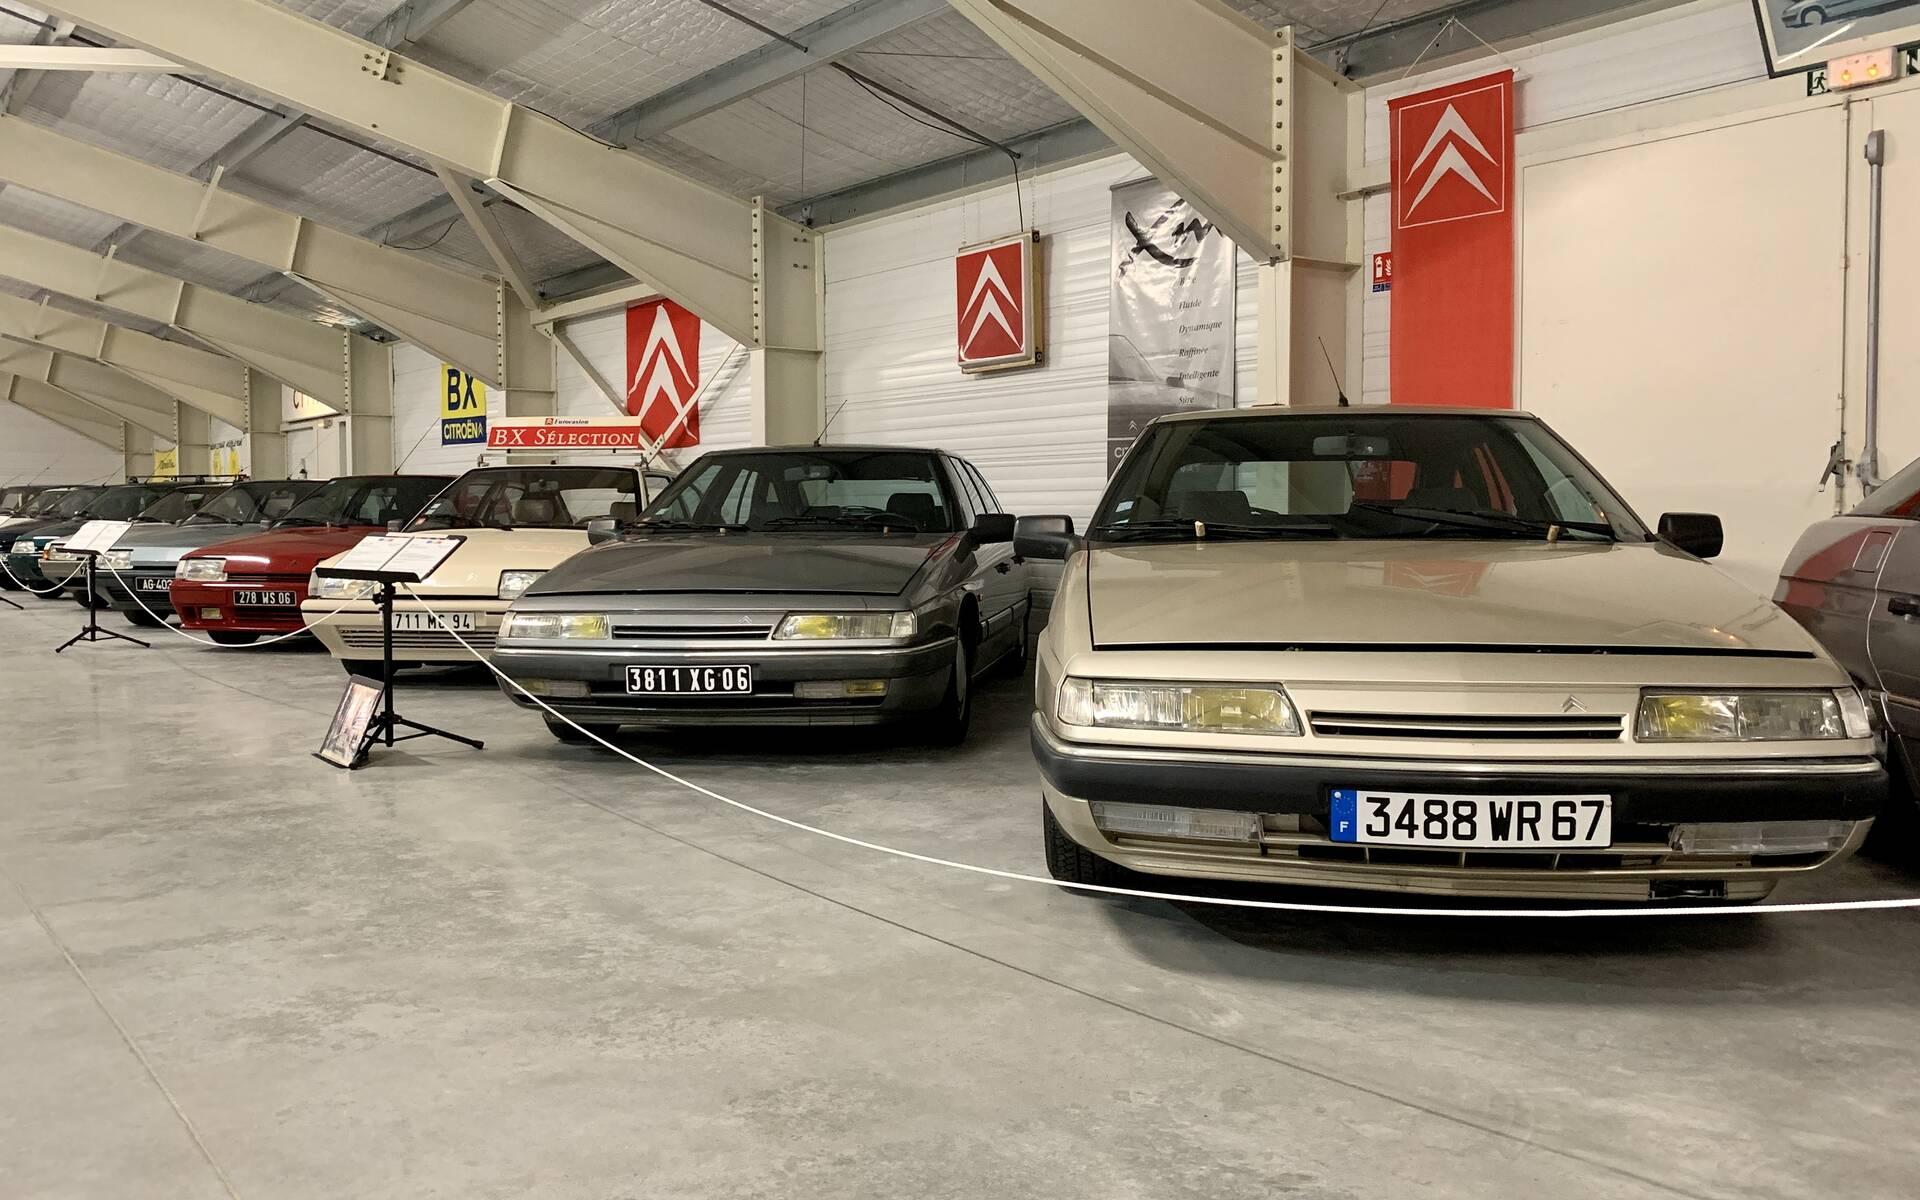 Photos: plus de 100 Citroën d'exception réunies dans un musée en France 543099-photos-plus-de-100-citroen-d-exception-reunies-dans-un-musee-en-france